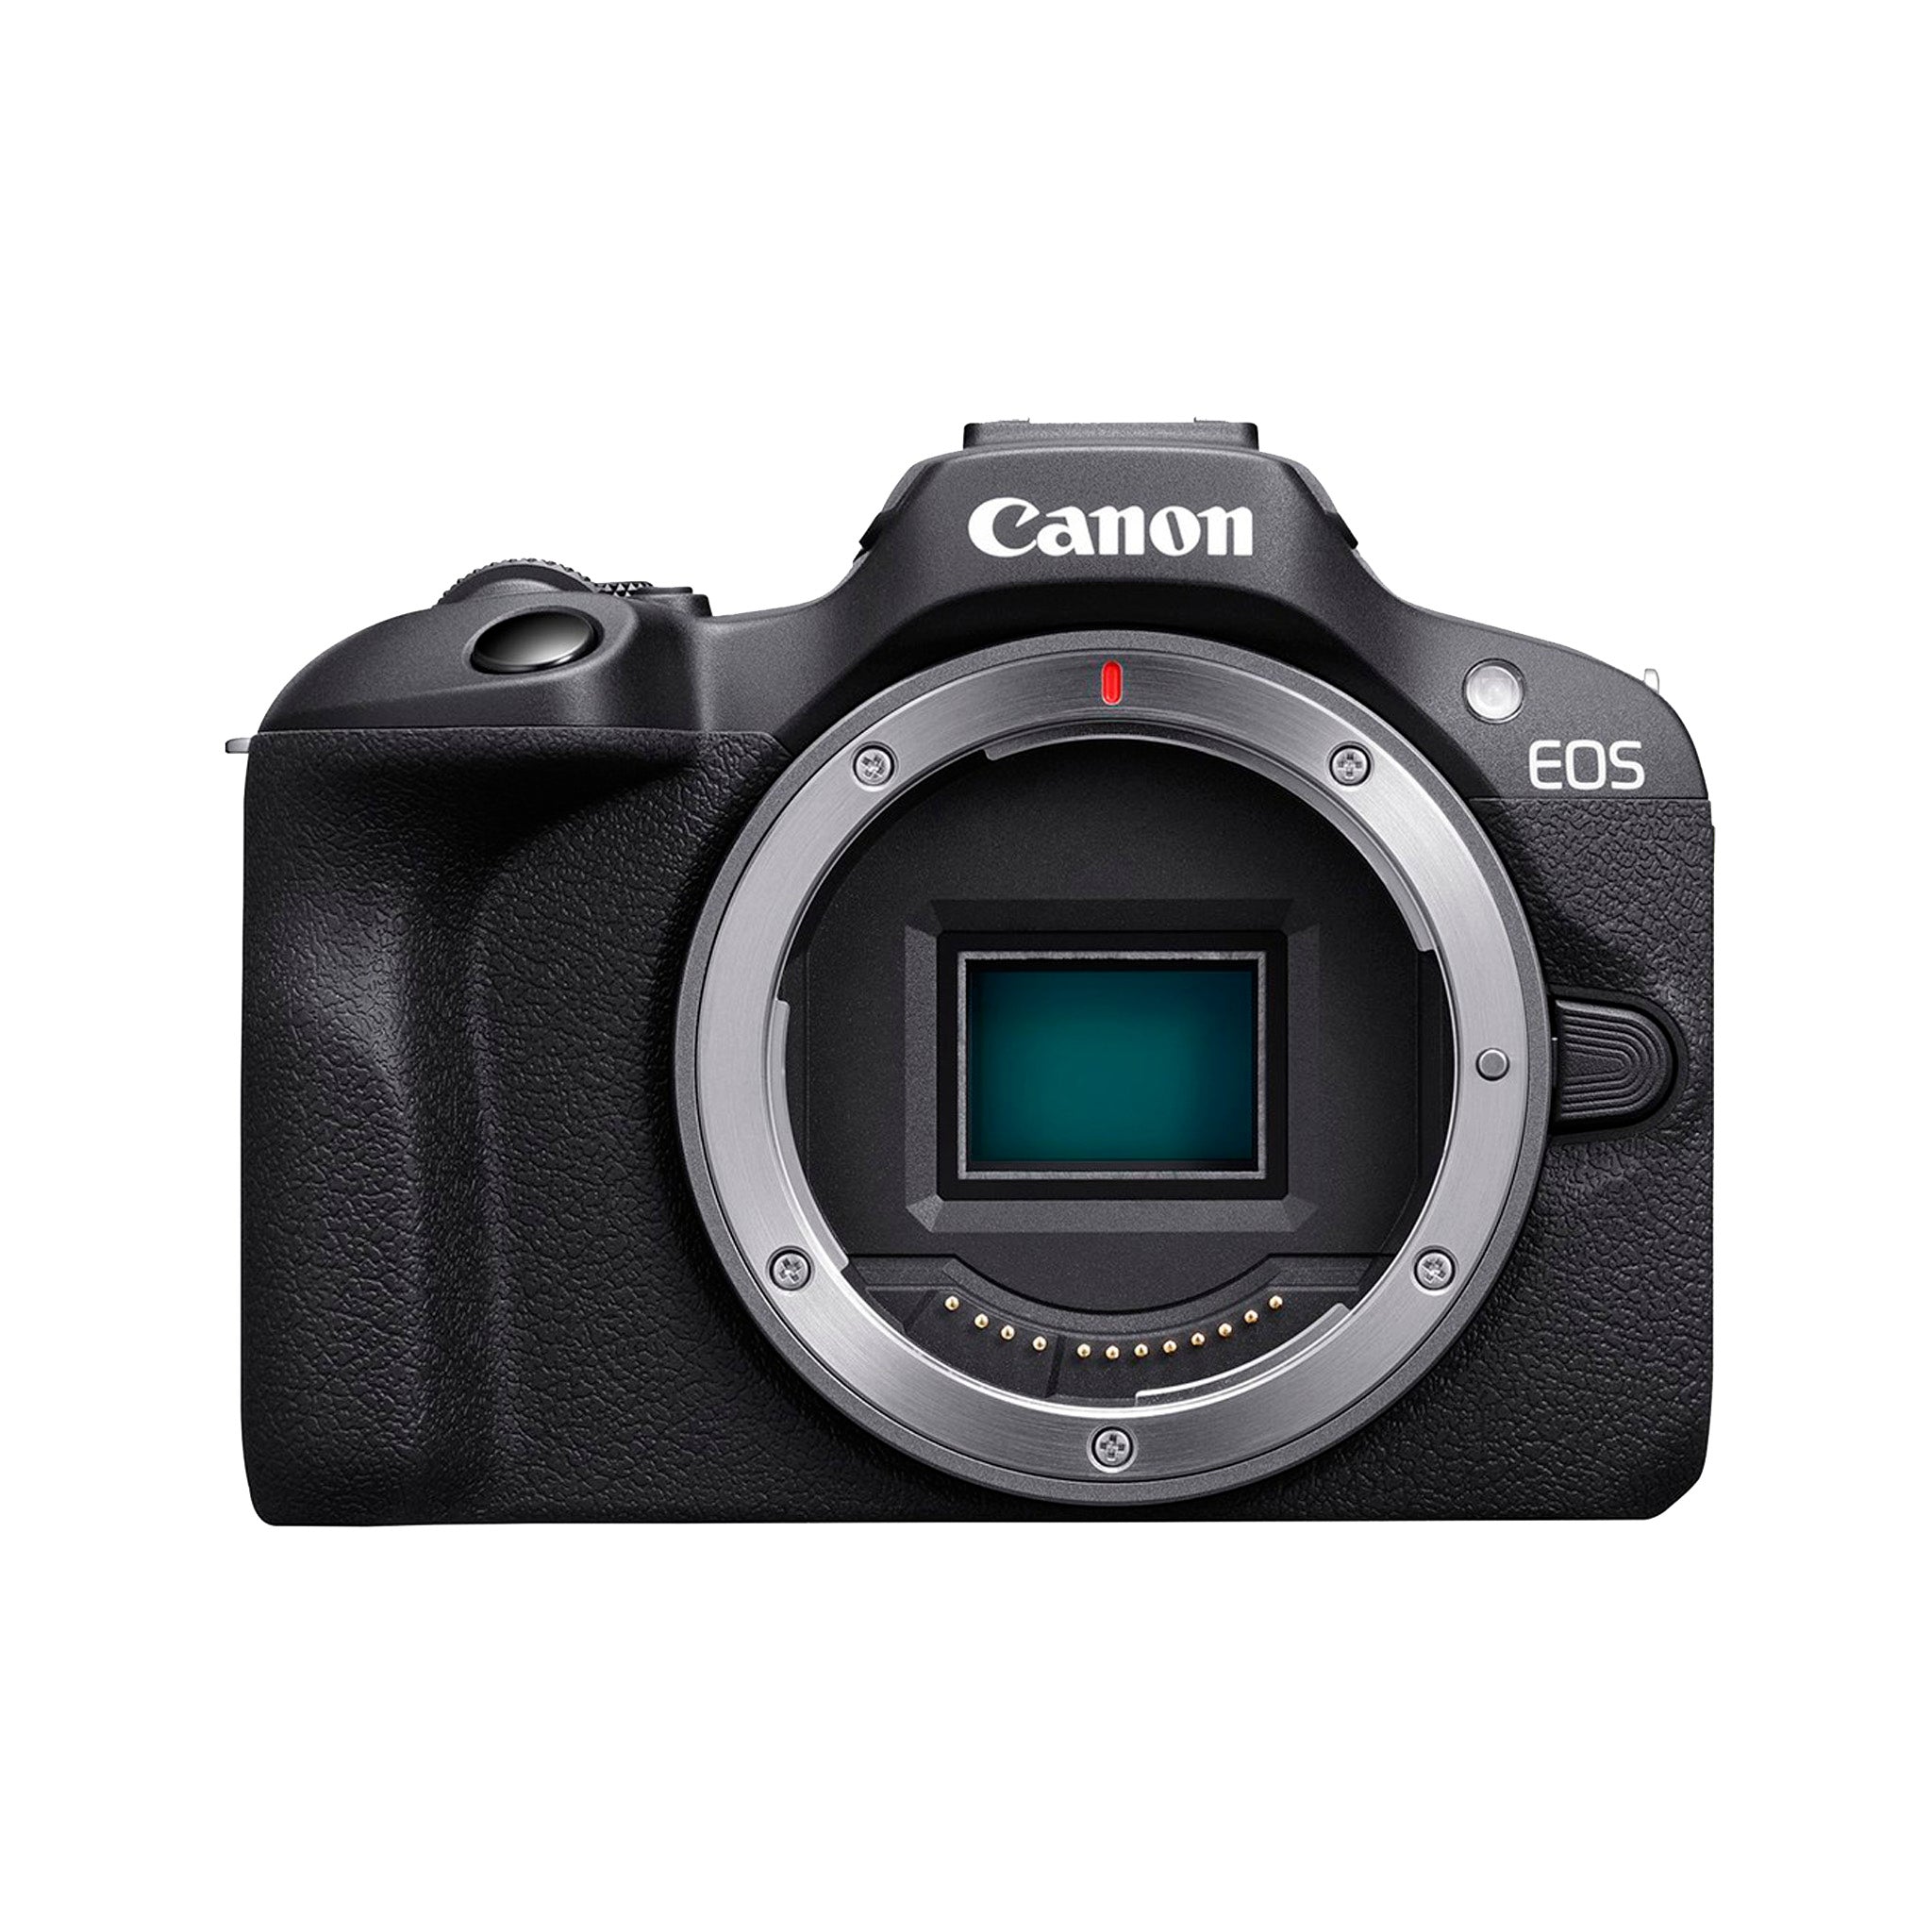 Canon EOS R100 Camera